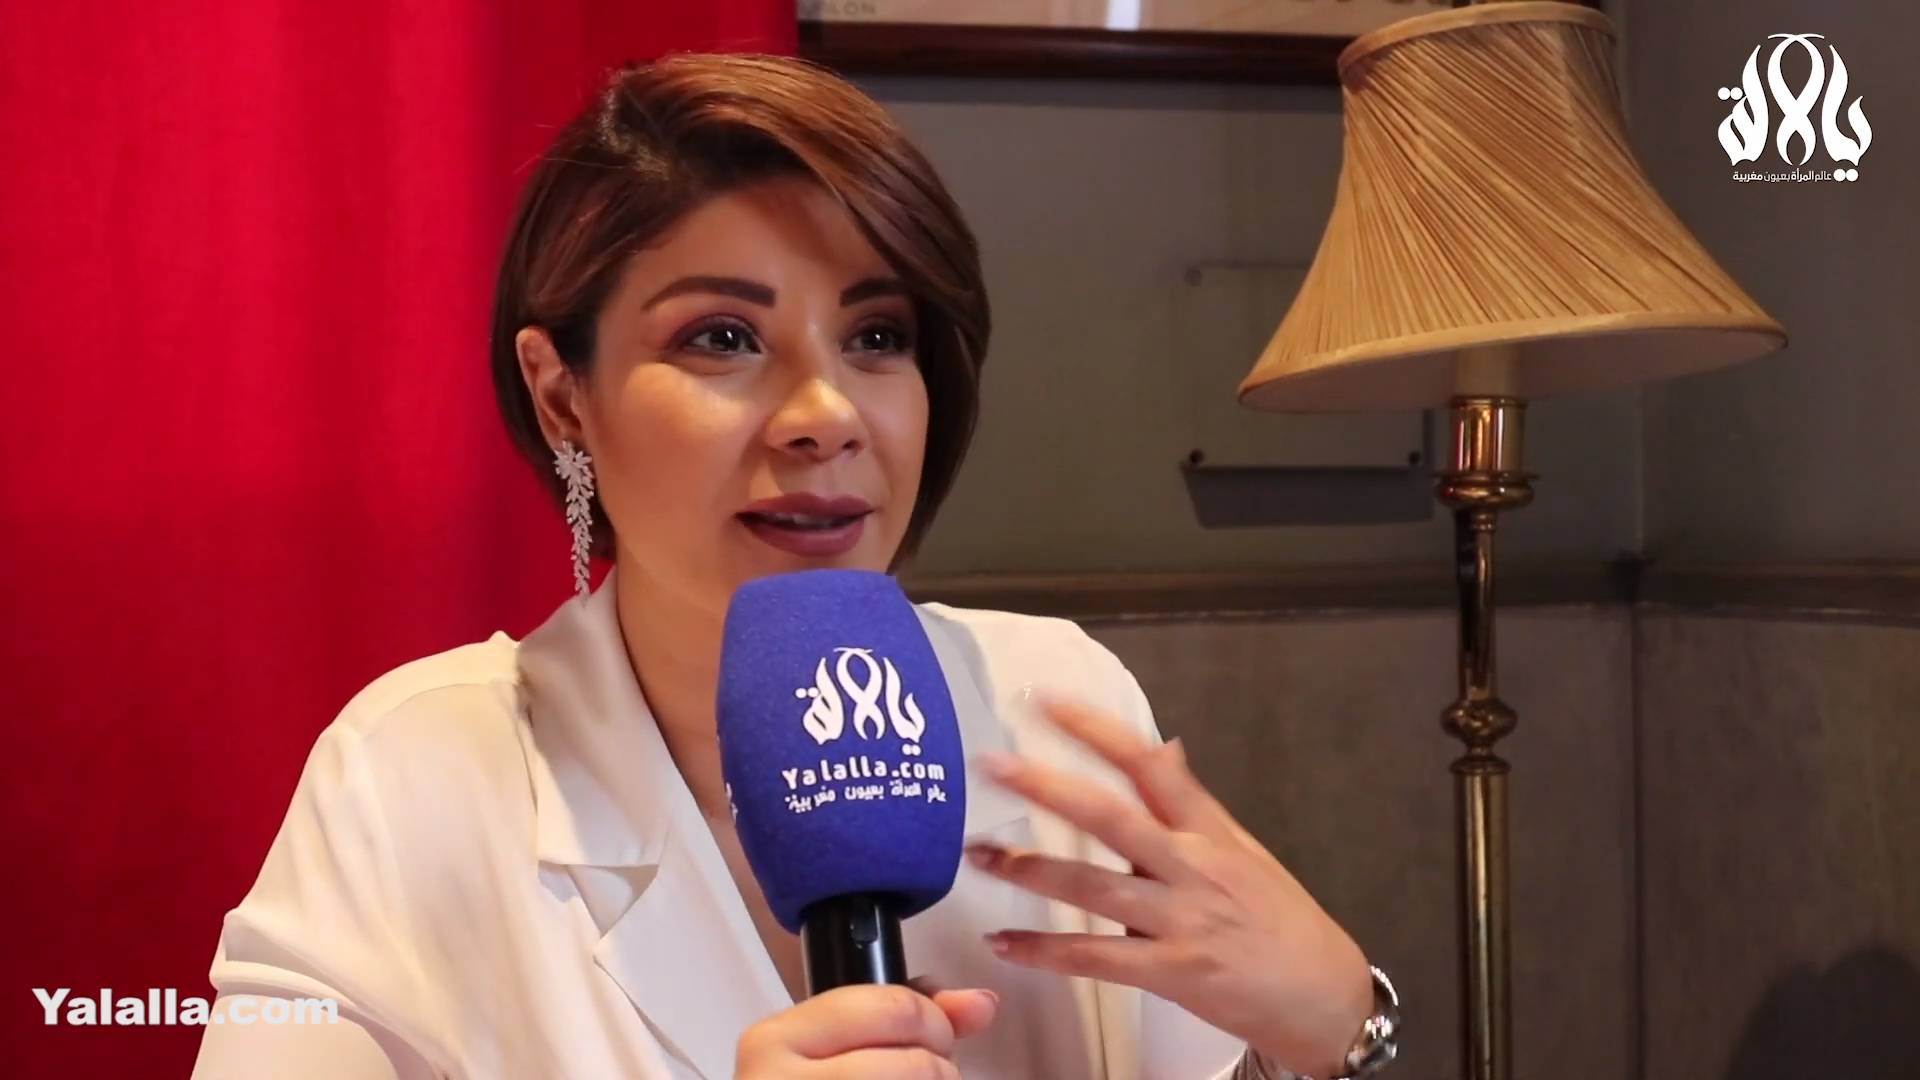 في حوار حصري مع "يالالة" ليلى الحديوي ترد على الانتقادات اللاذعة و تتحدث عن برنامجها الجديد في رمضان